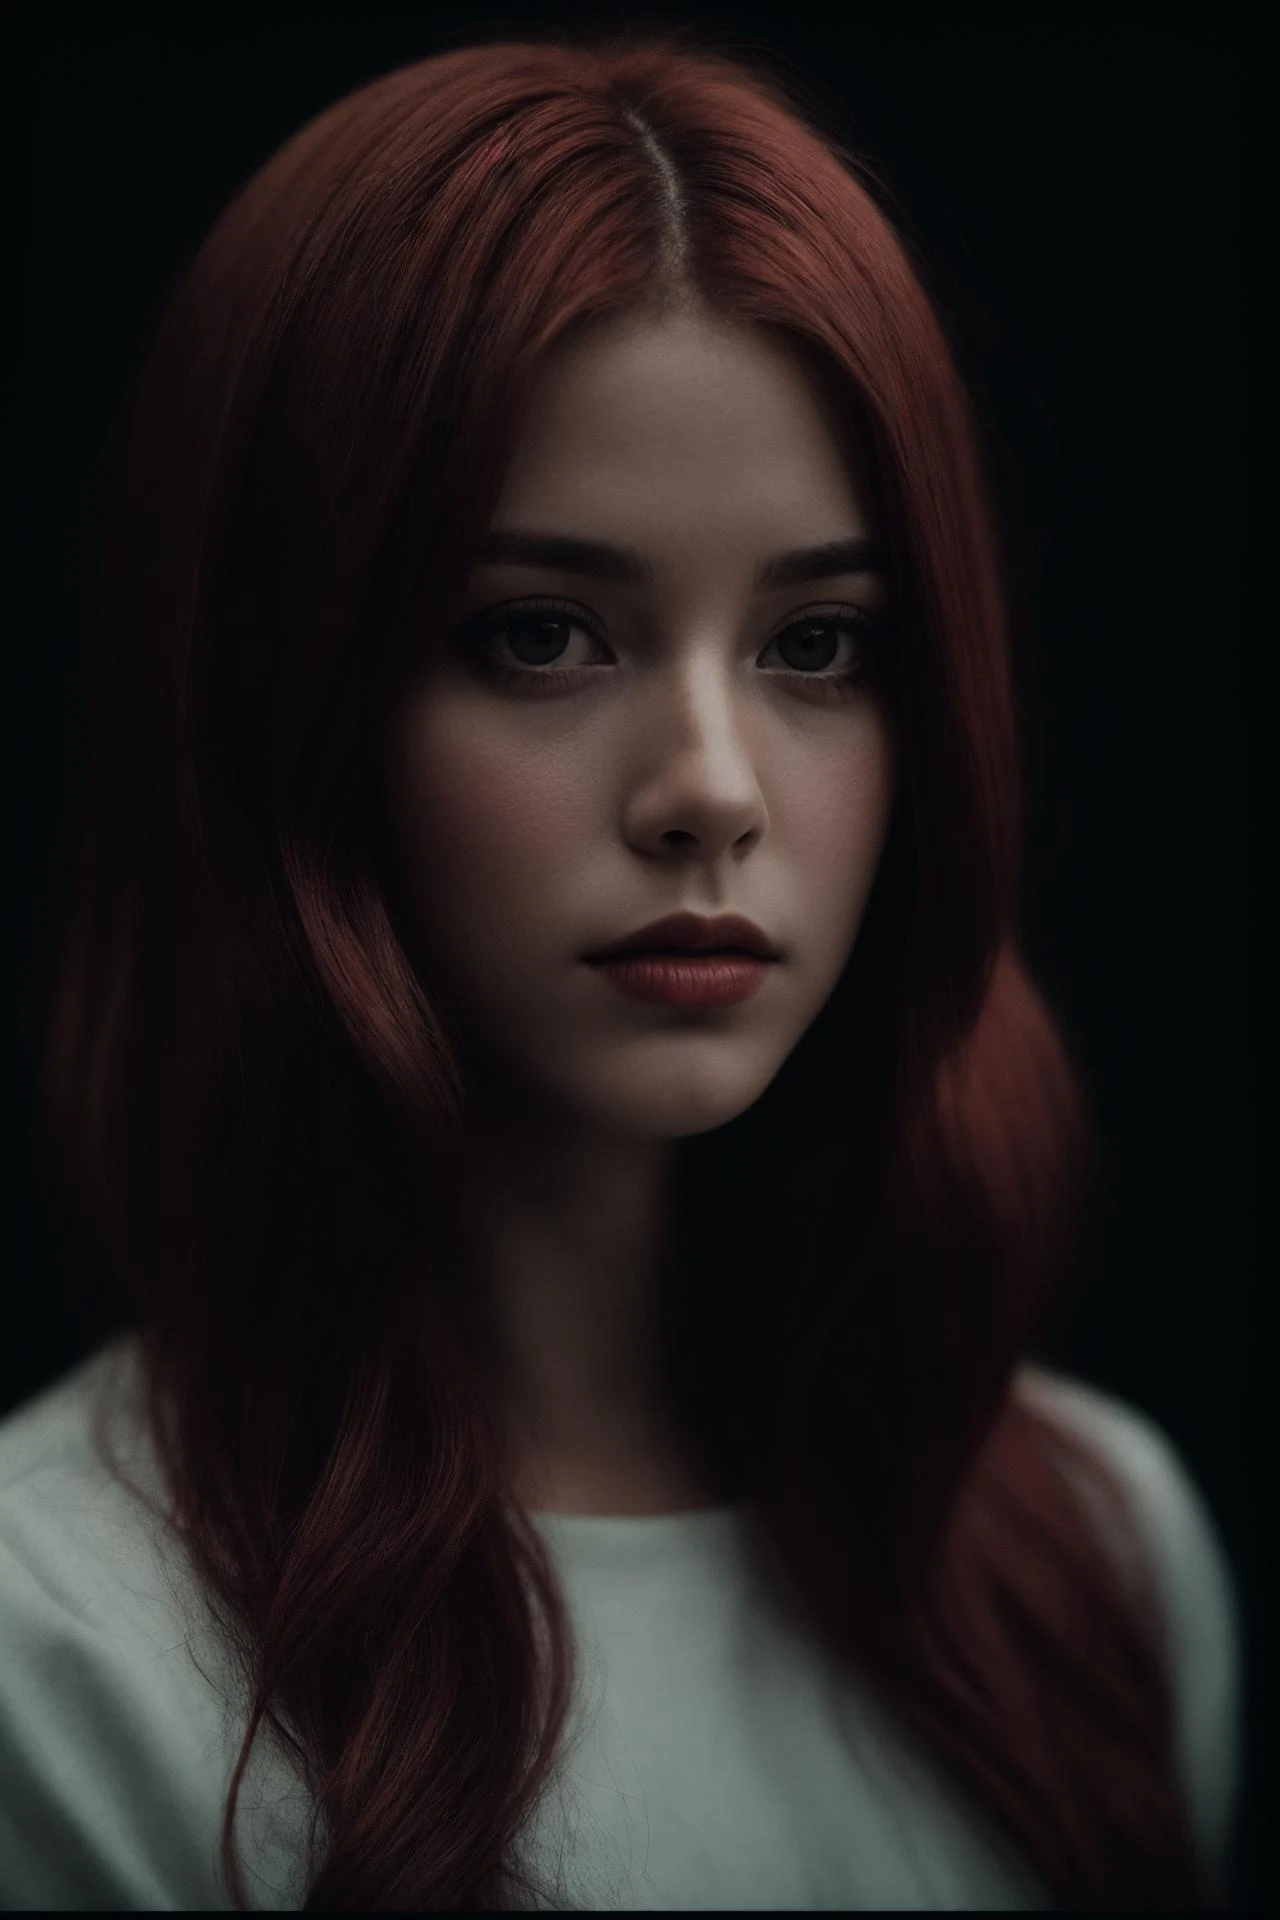 1女性,暗闇で, フィルムグレイン, 受賞写真, (緑色の色合い:0.5), 横を見る, 赤毛